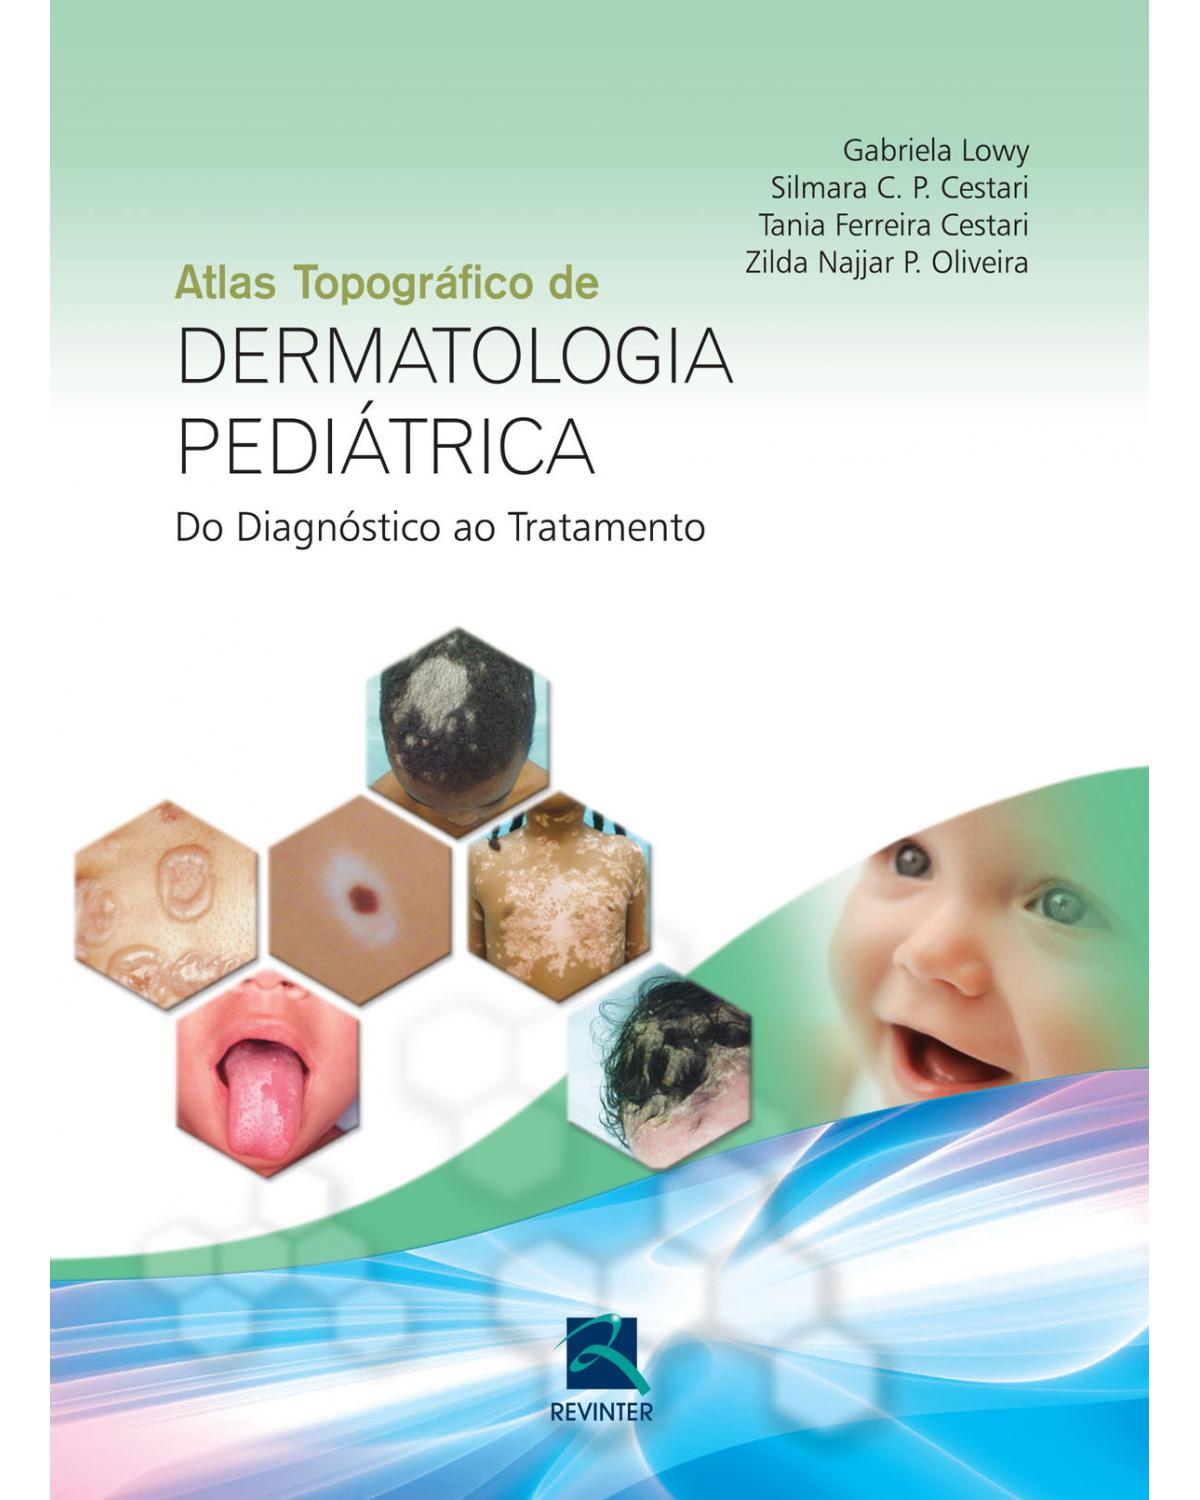 Atlas topográfico de dermatologia pediátrica: Do diagnóstico ao tratamento - 1ª Edição